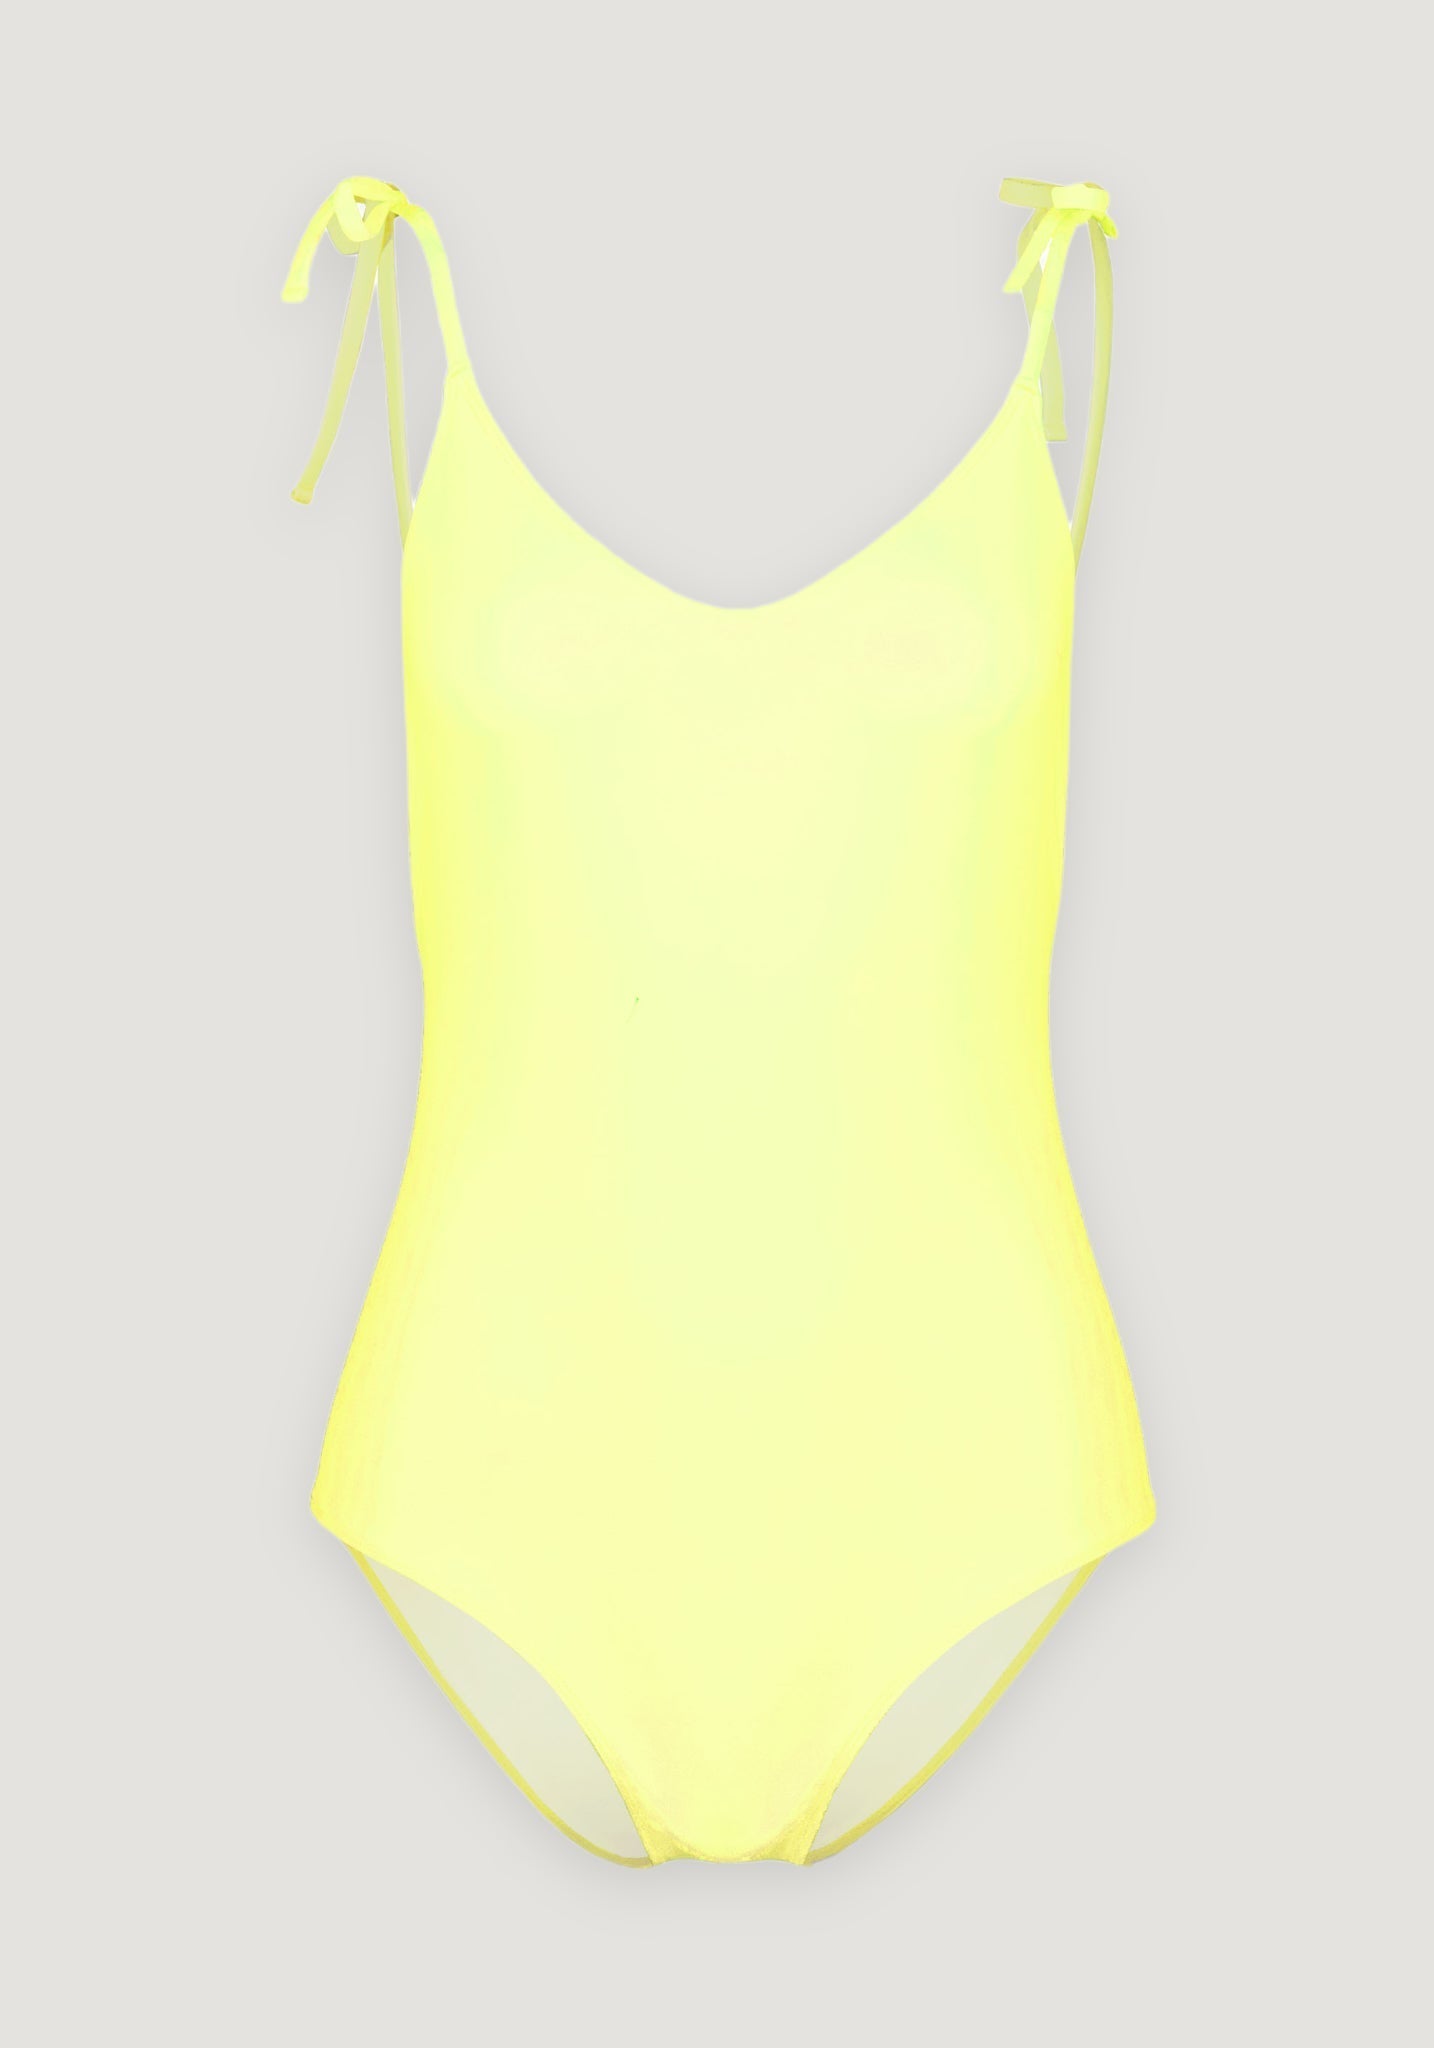 Costum înot femei protecție UV - Amelia Canary 36